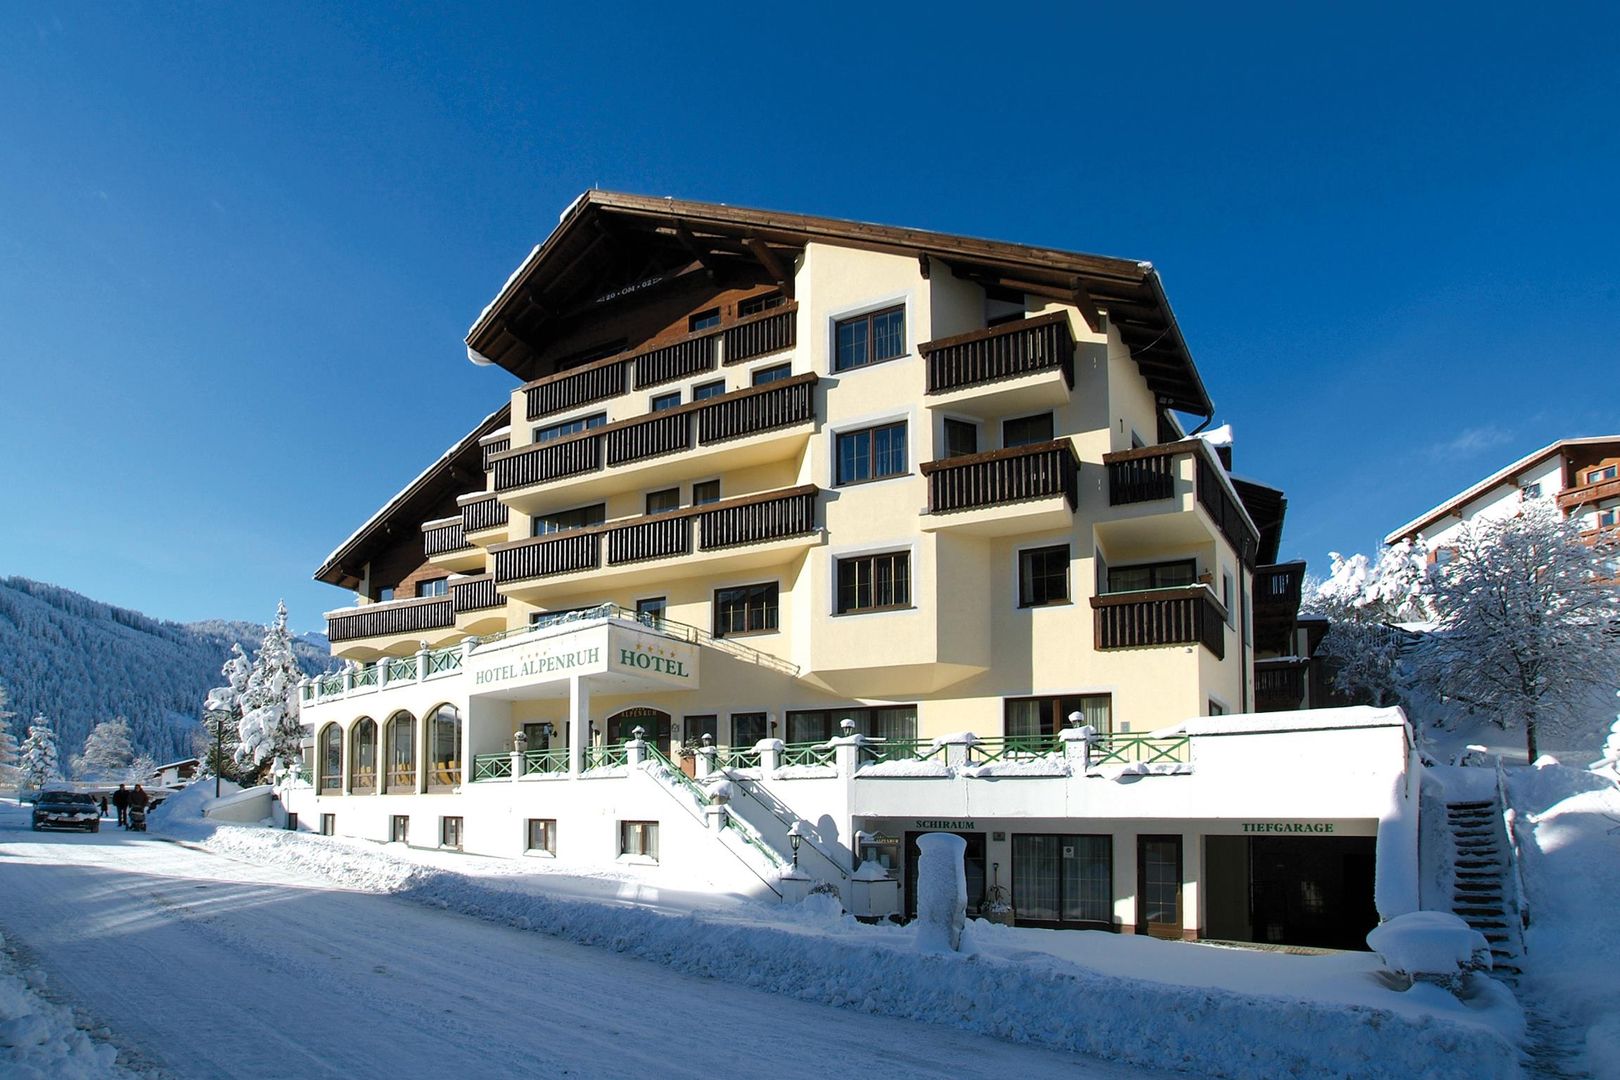 Meer info over Hotel Alpenruh  bij Wintertrex